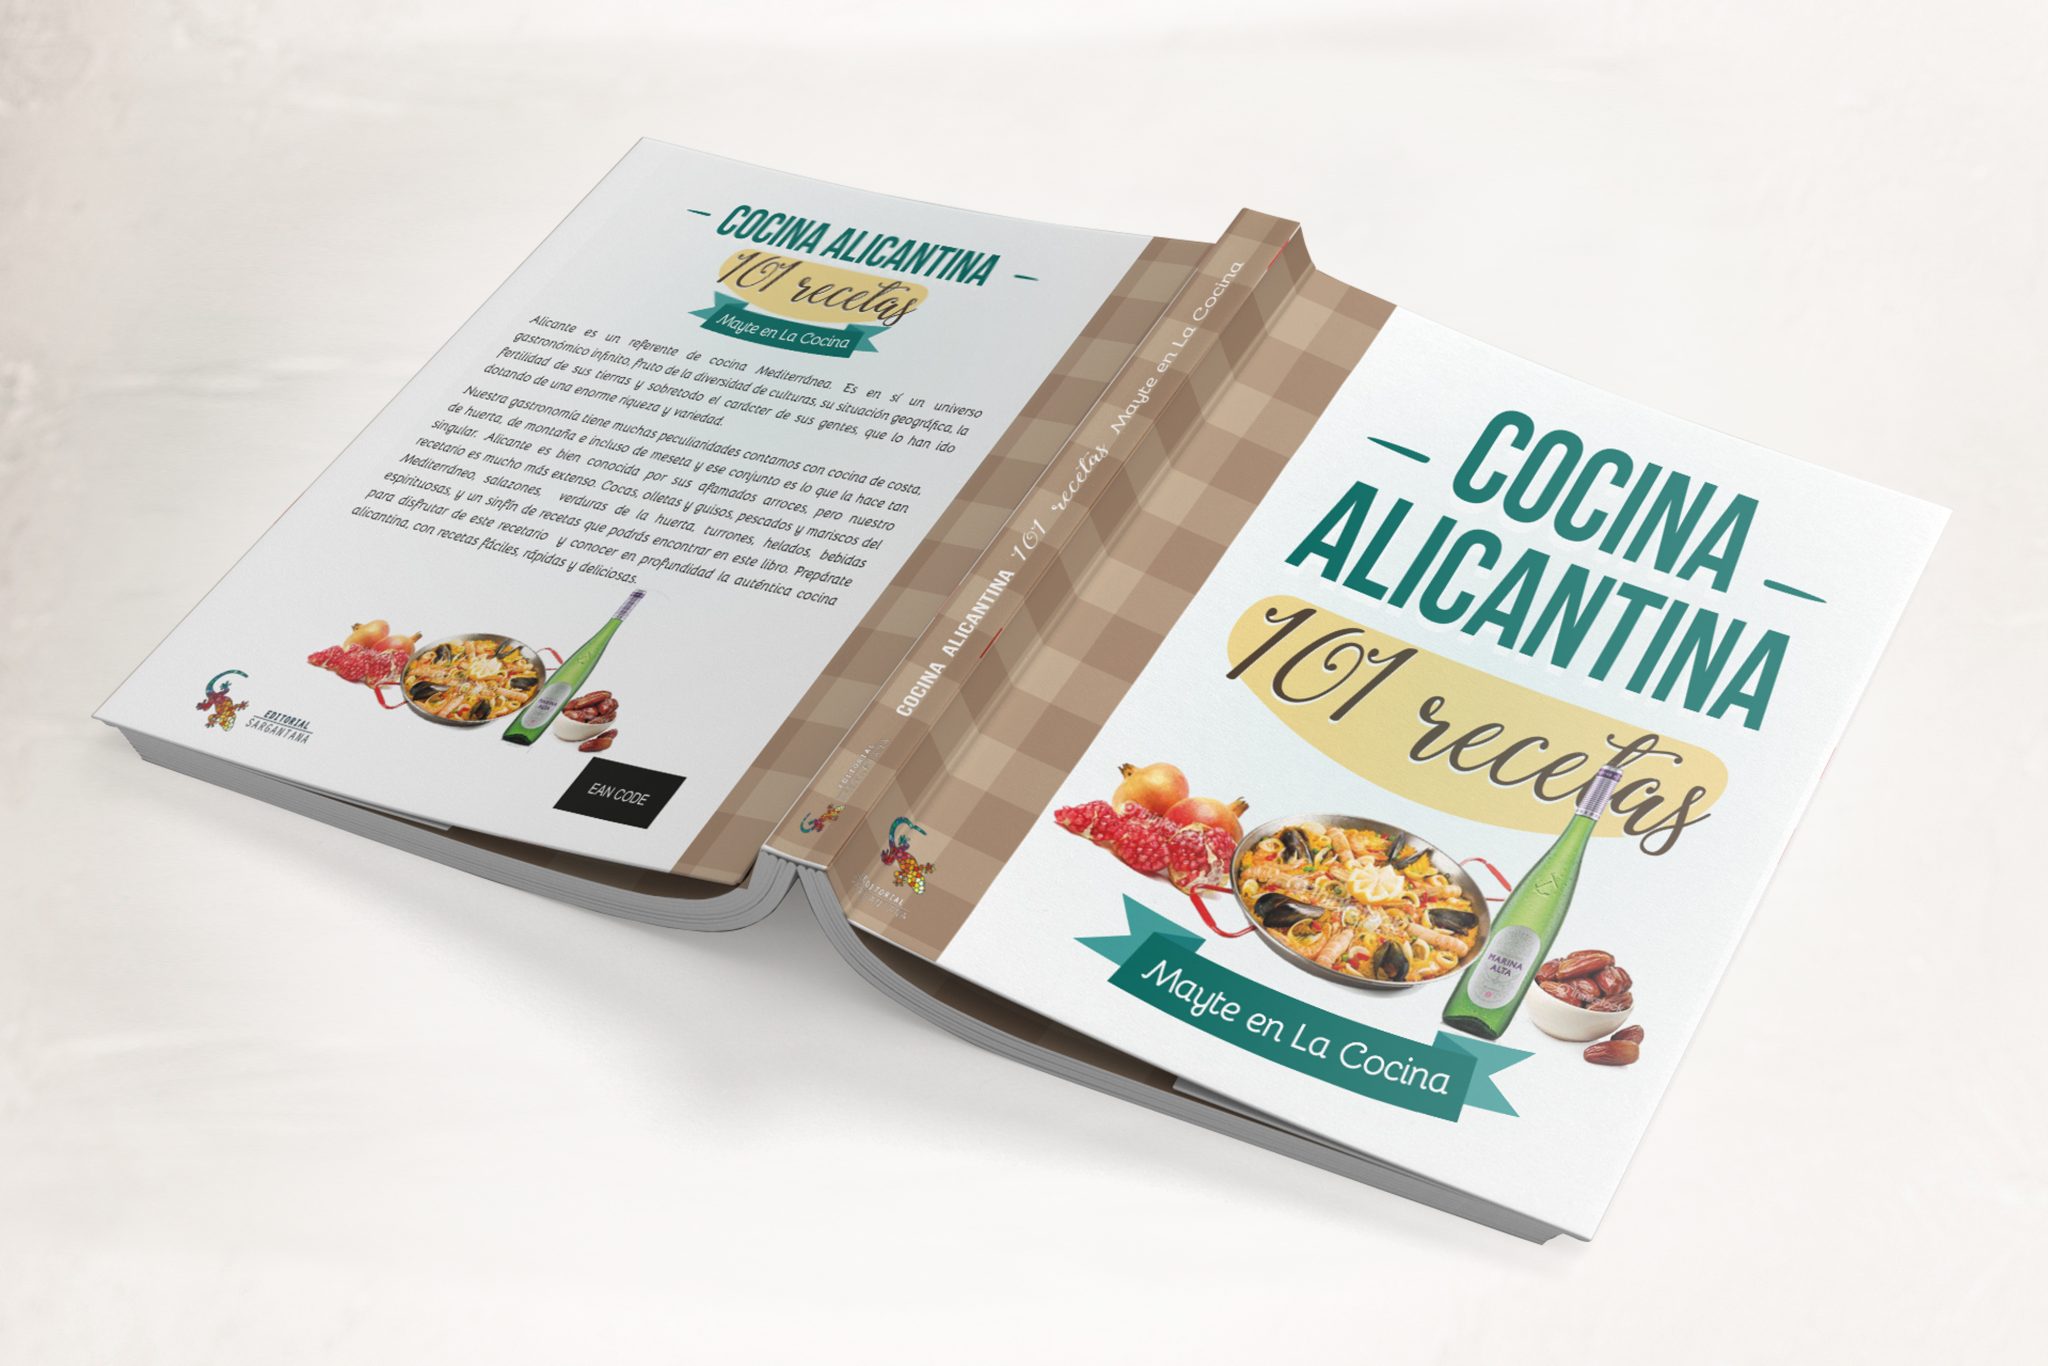 Diseño de libro Cocina Alicantina 101 recetas para Editorial Sargantana